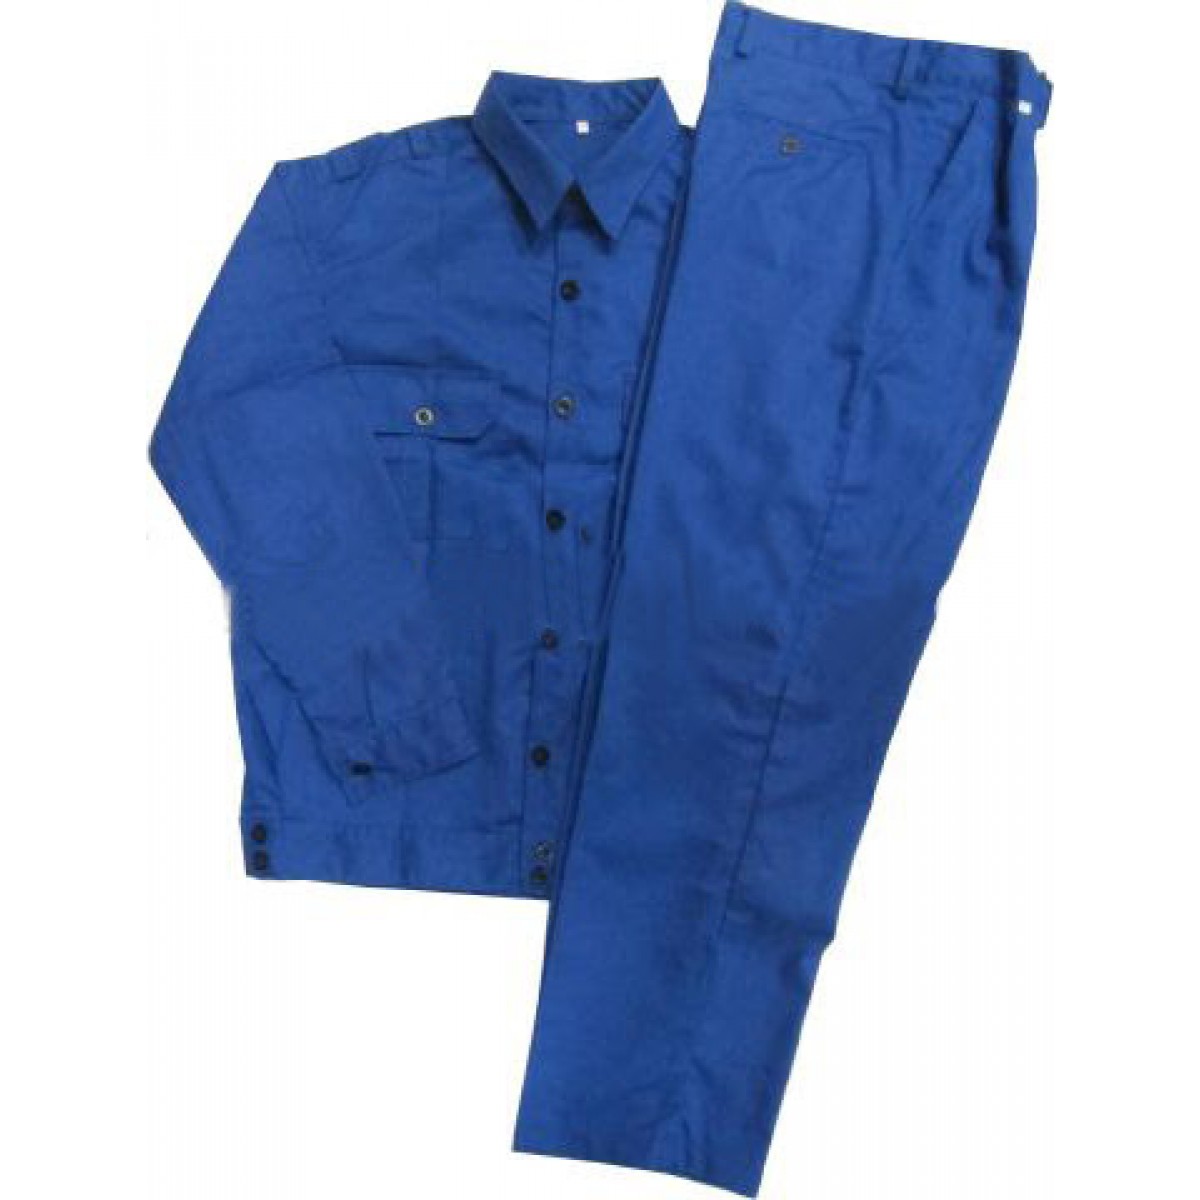 Bộ quần áo bảo hộ màu xanh công nhân